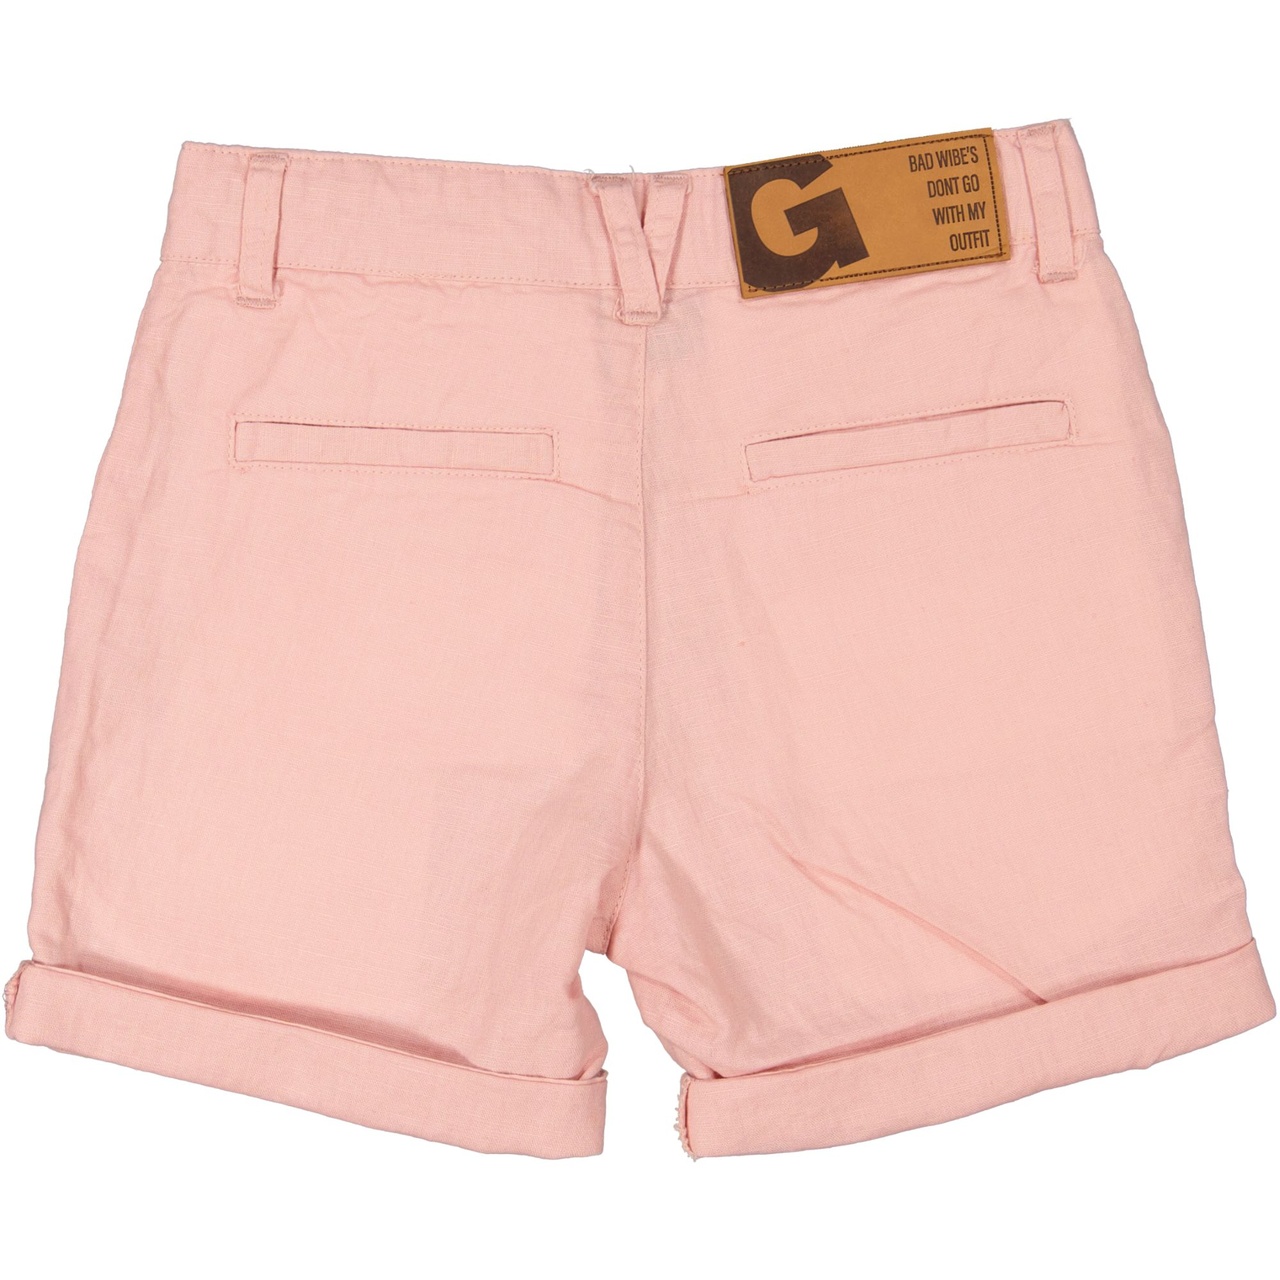 Linnen shorts teen Old pink 158/164